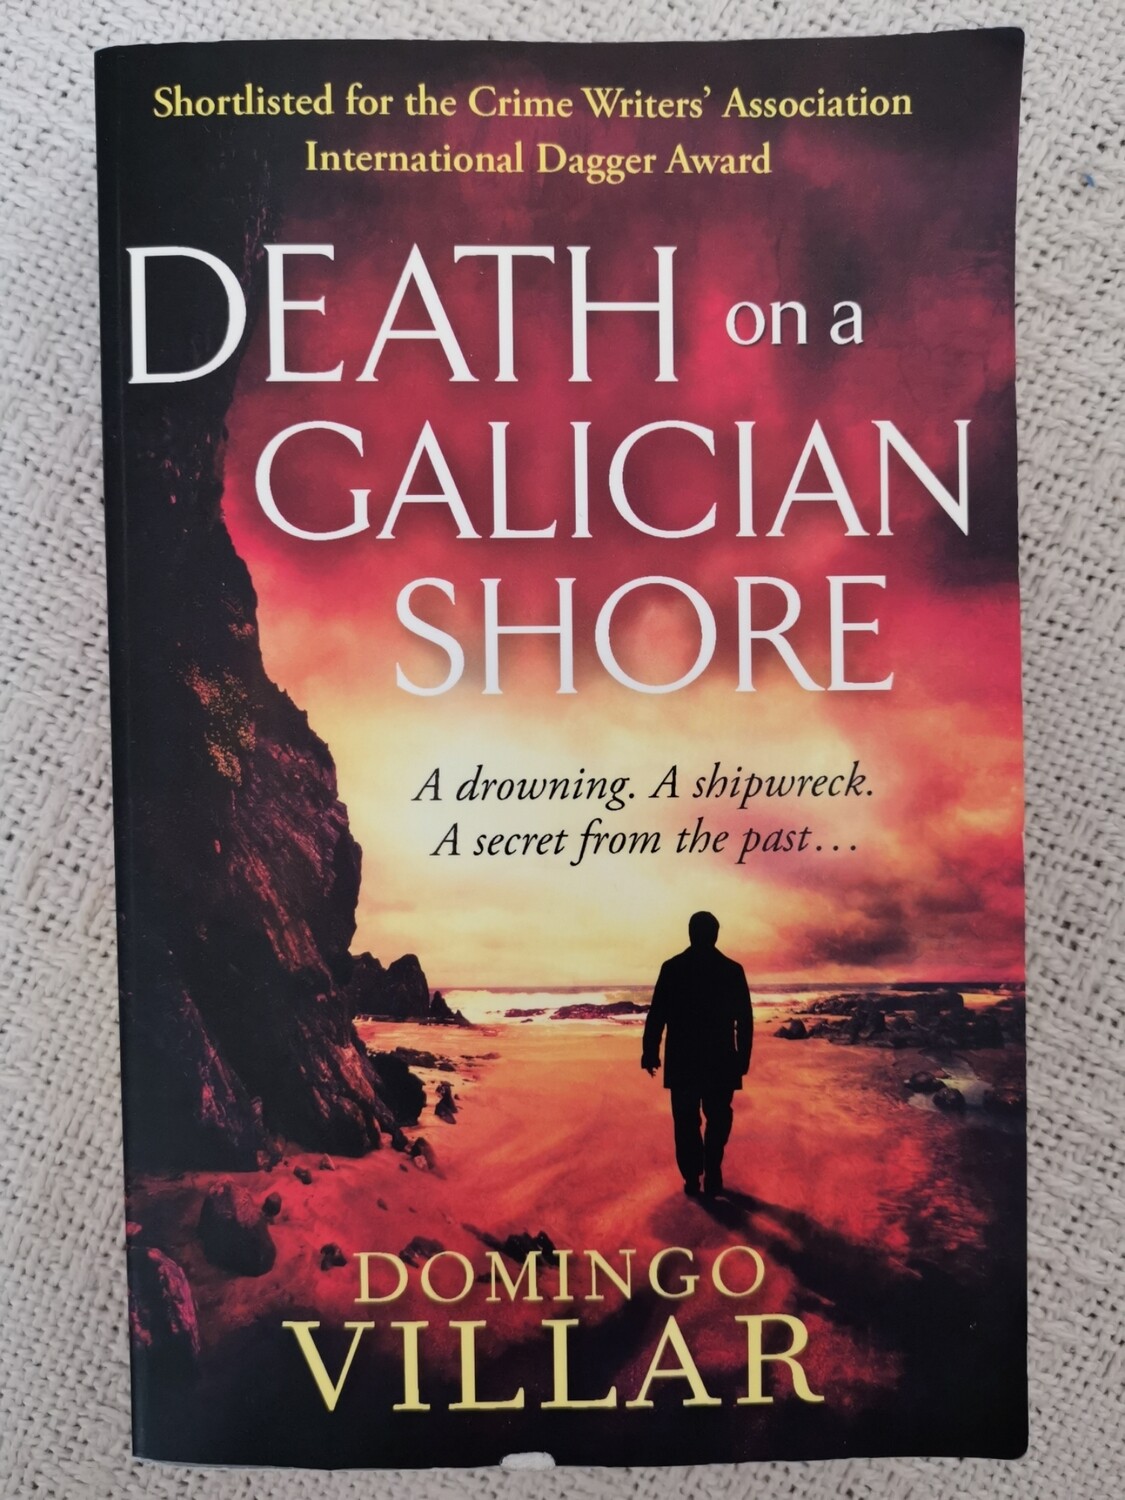 Death on a Galician shore, Domingo Villar